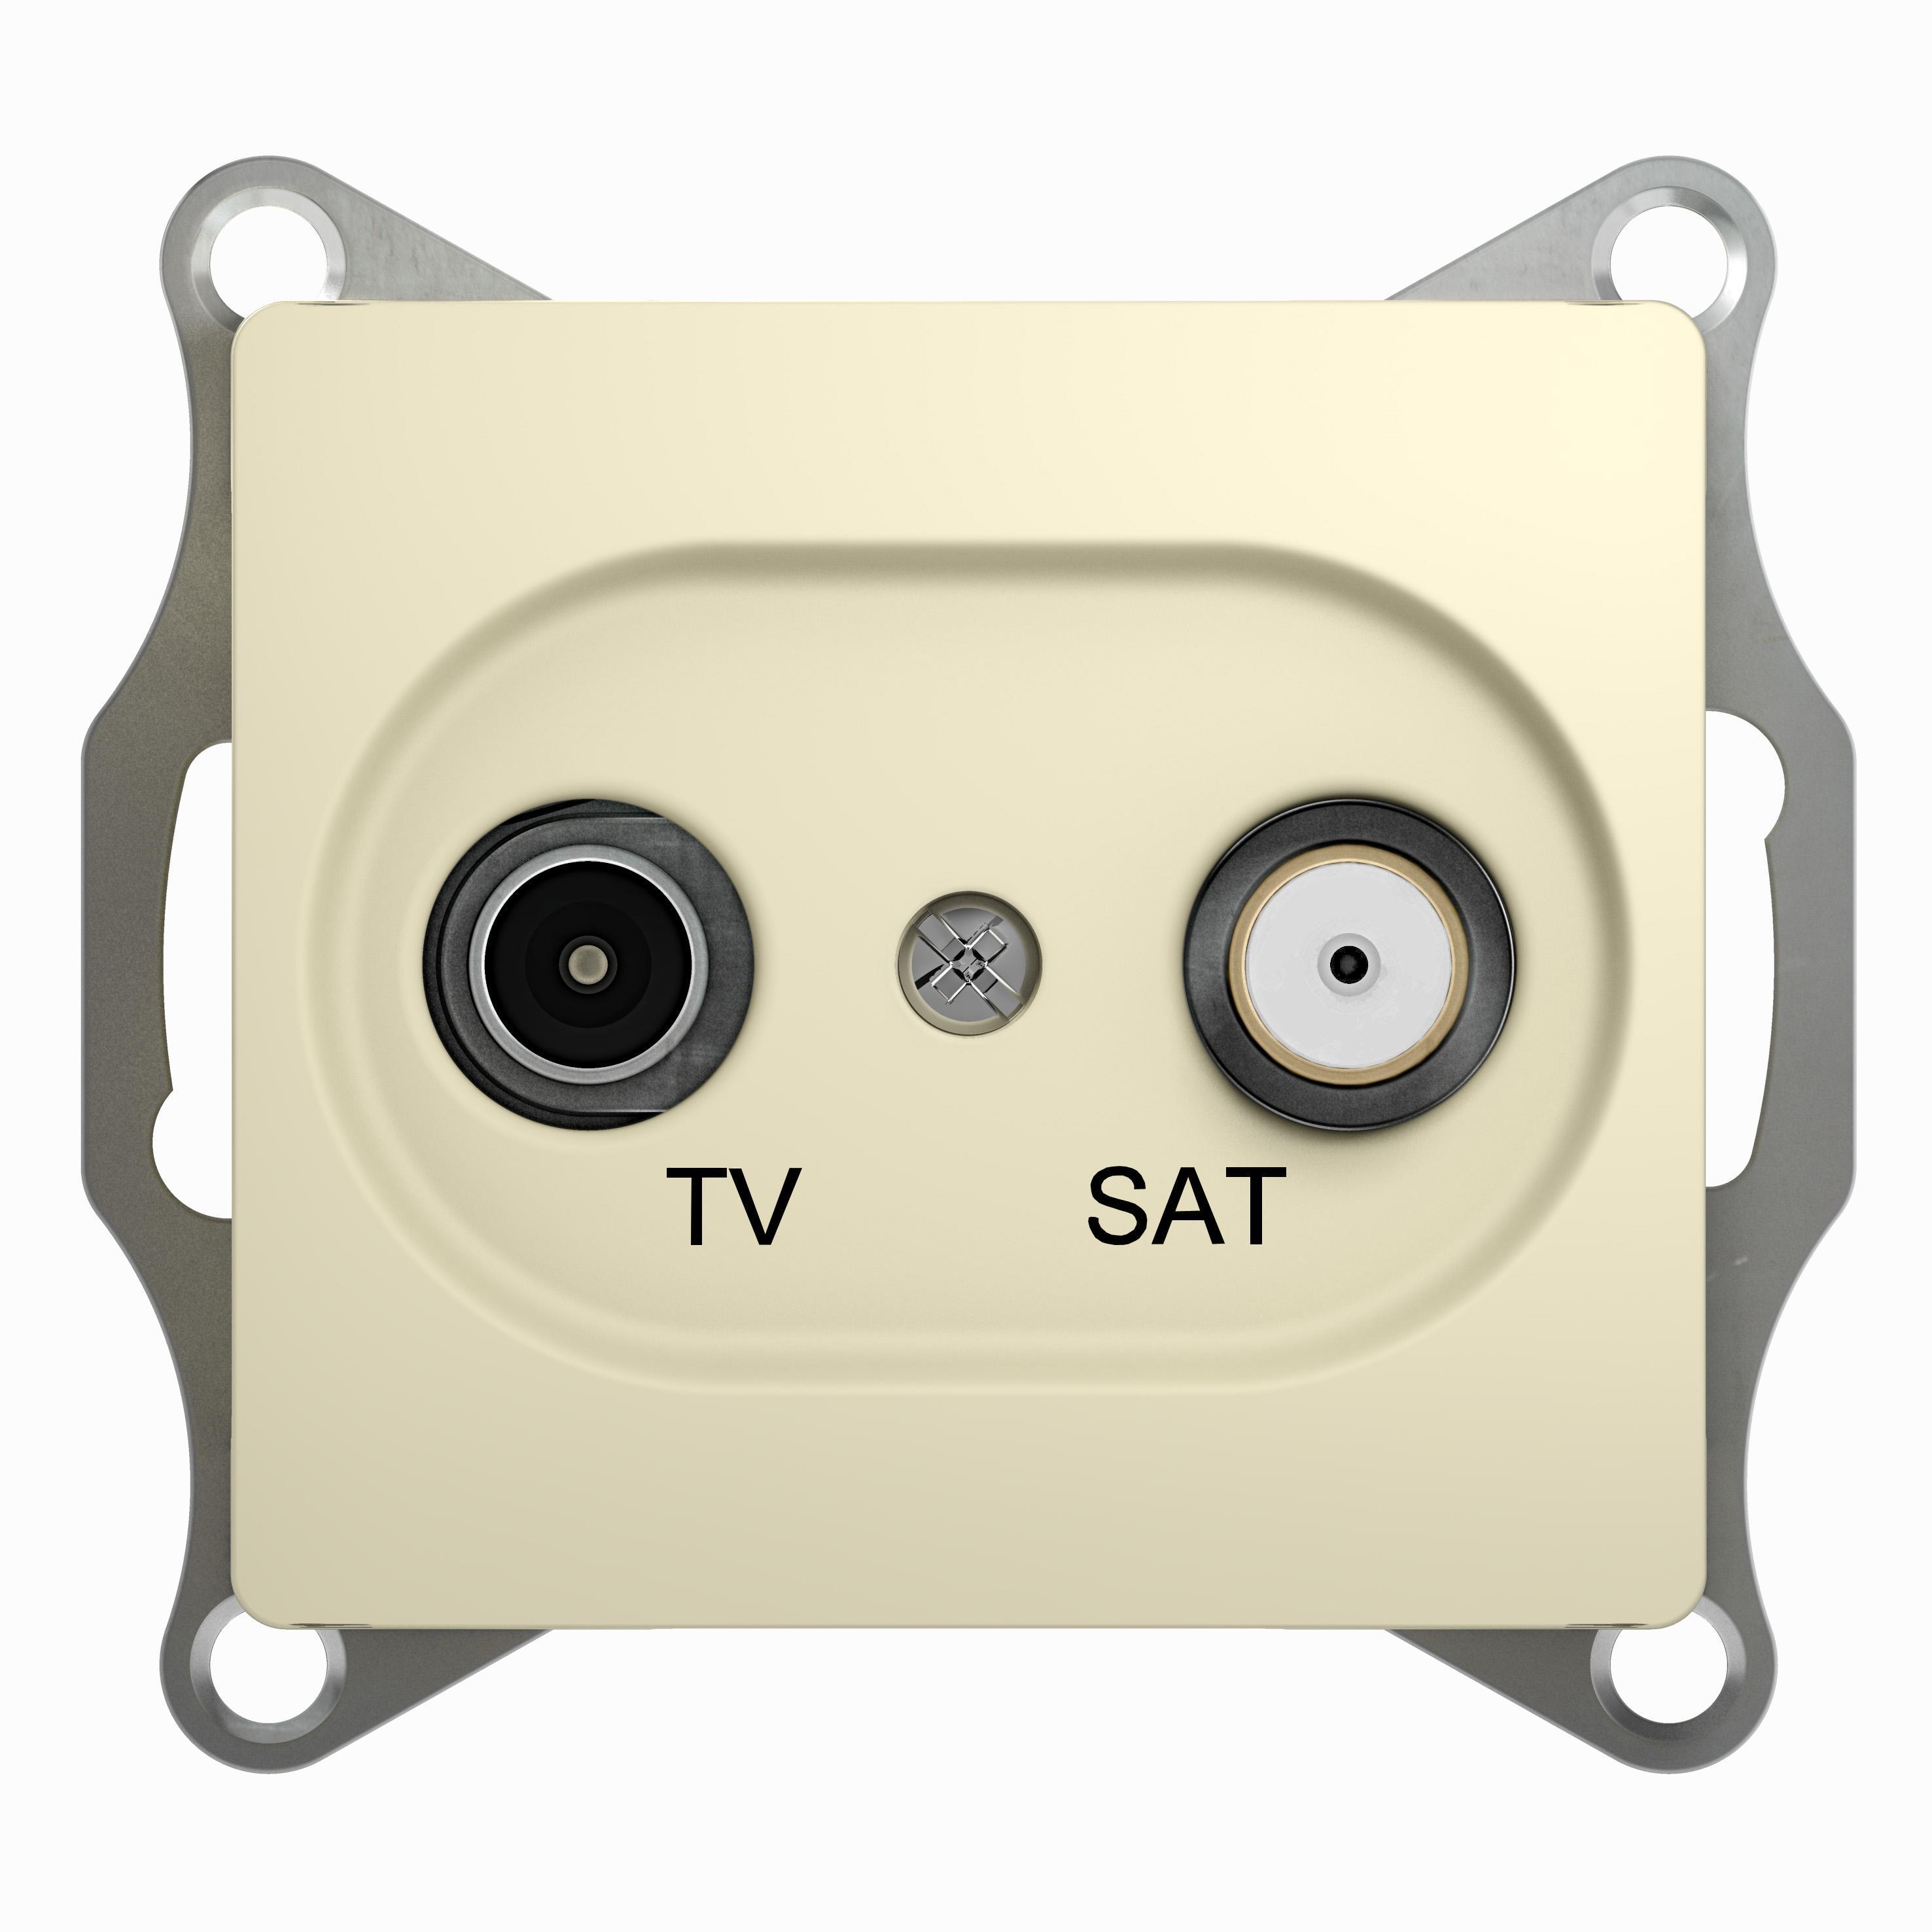  артикул GSL000297 название Розетка телевизионная единственная ТV-SAT , Бежевый, серия Glossa, Schneider Electric